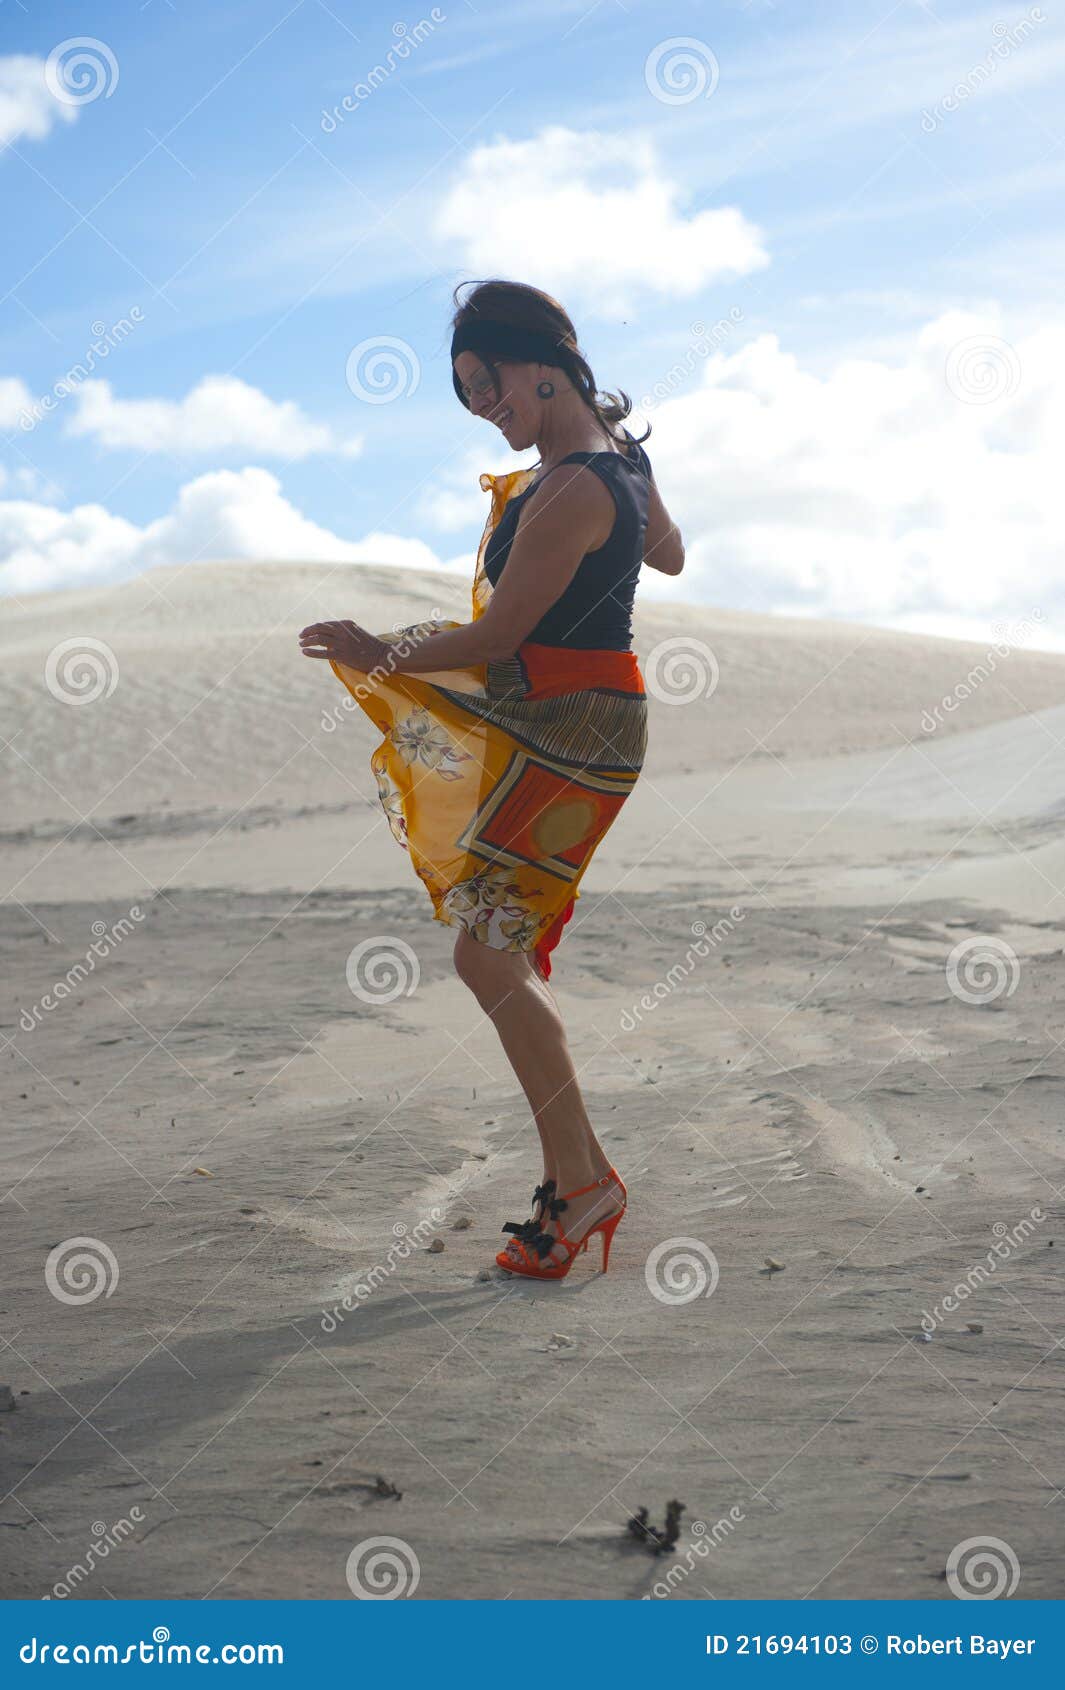 Desert Dancing Woman stock image. Image of heels, heel - 21694103